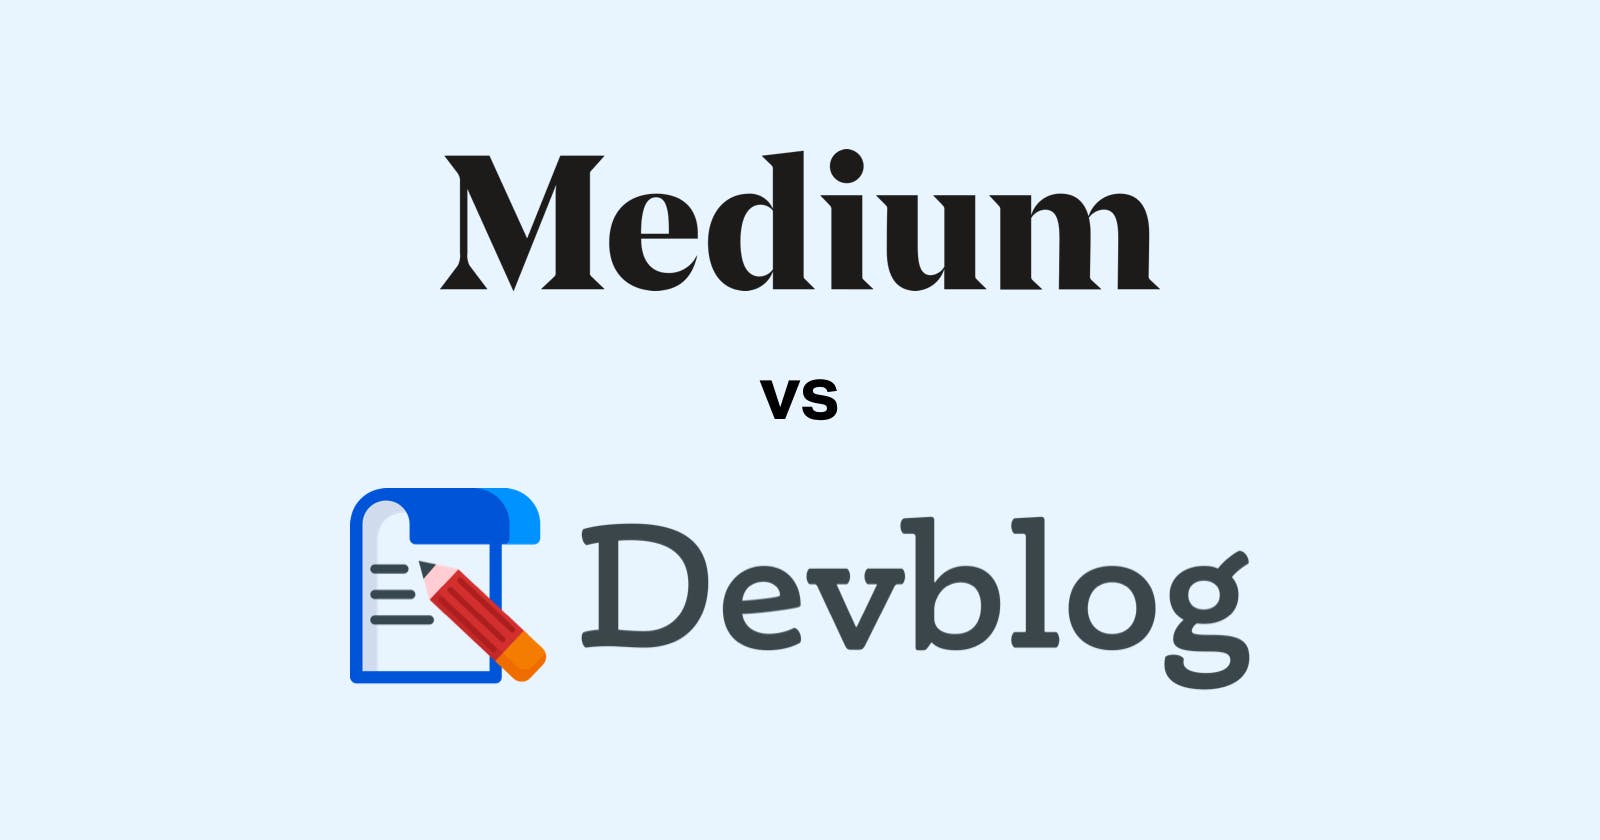 Medium vs Devblog by Hashnode - which one is a better blogging platform for developers?